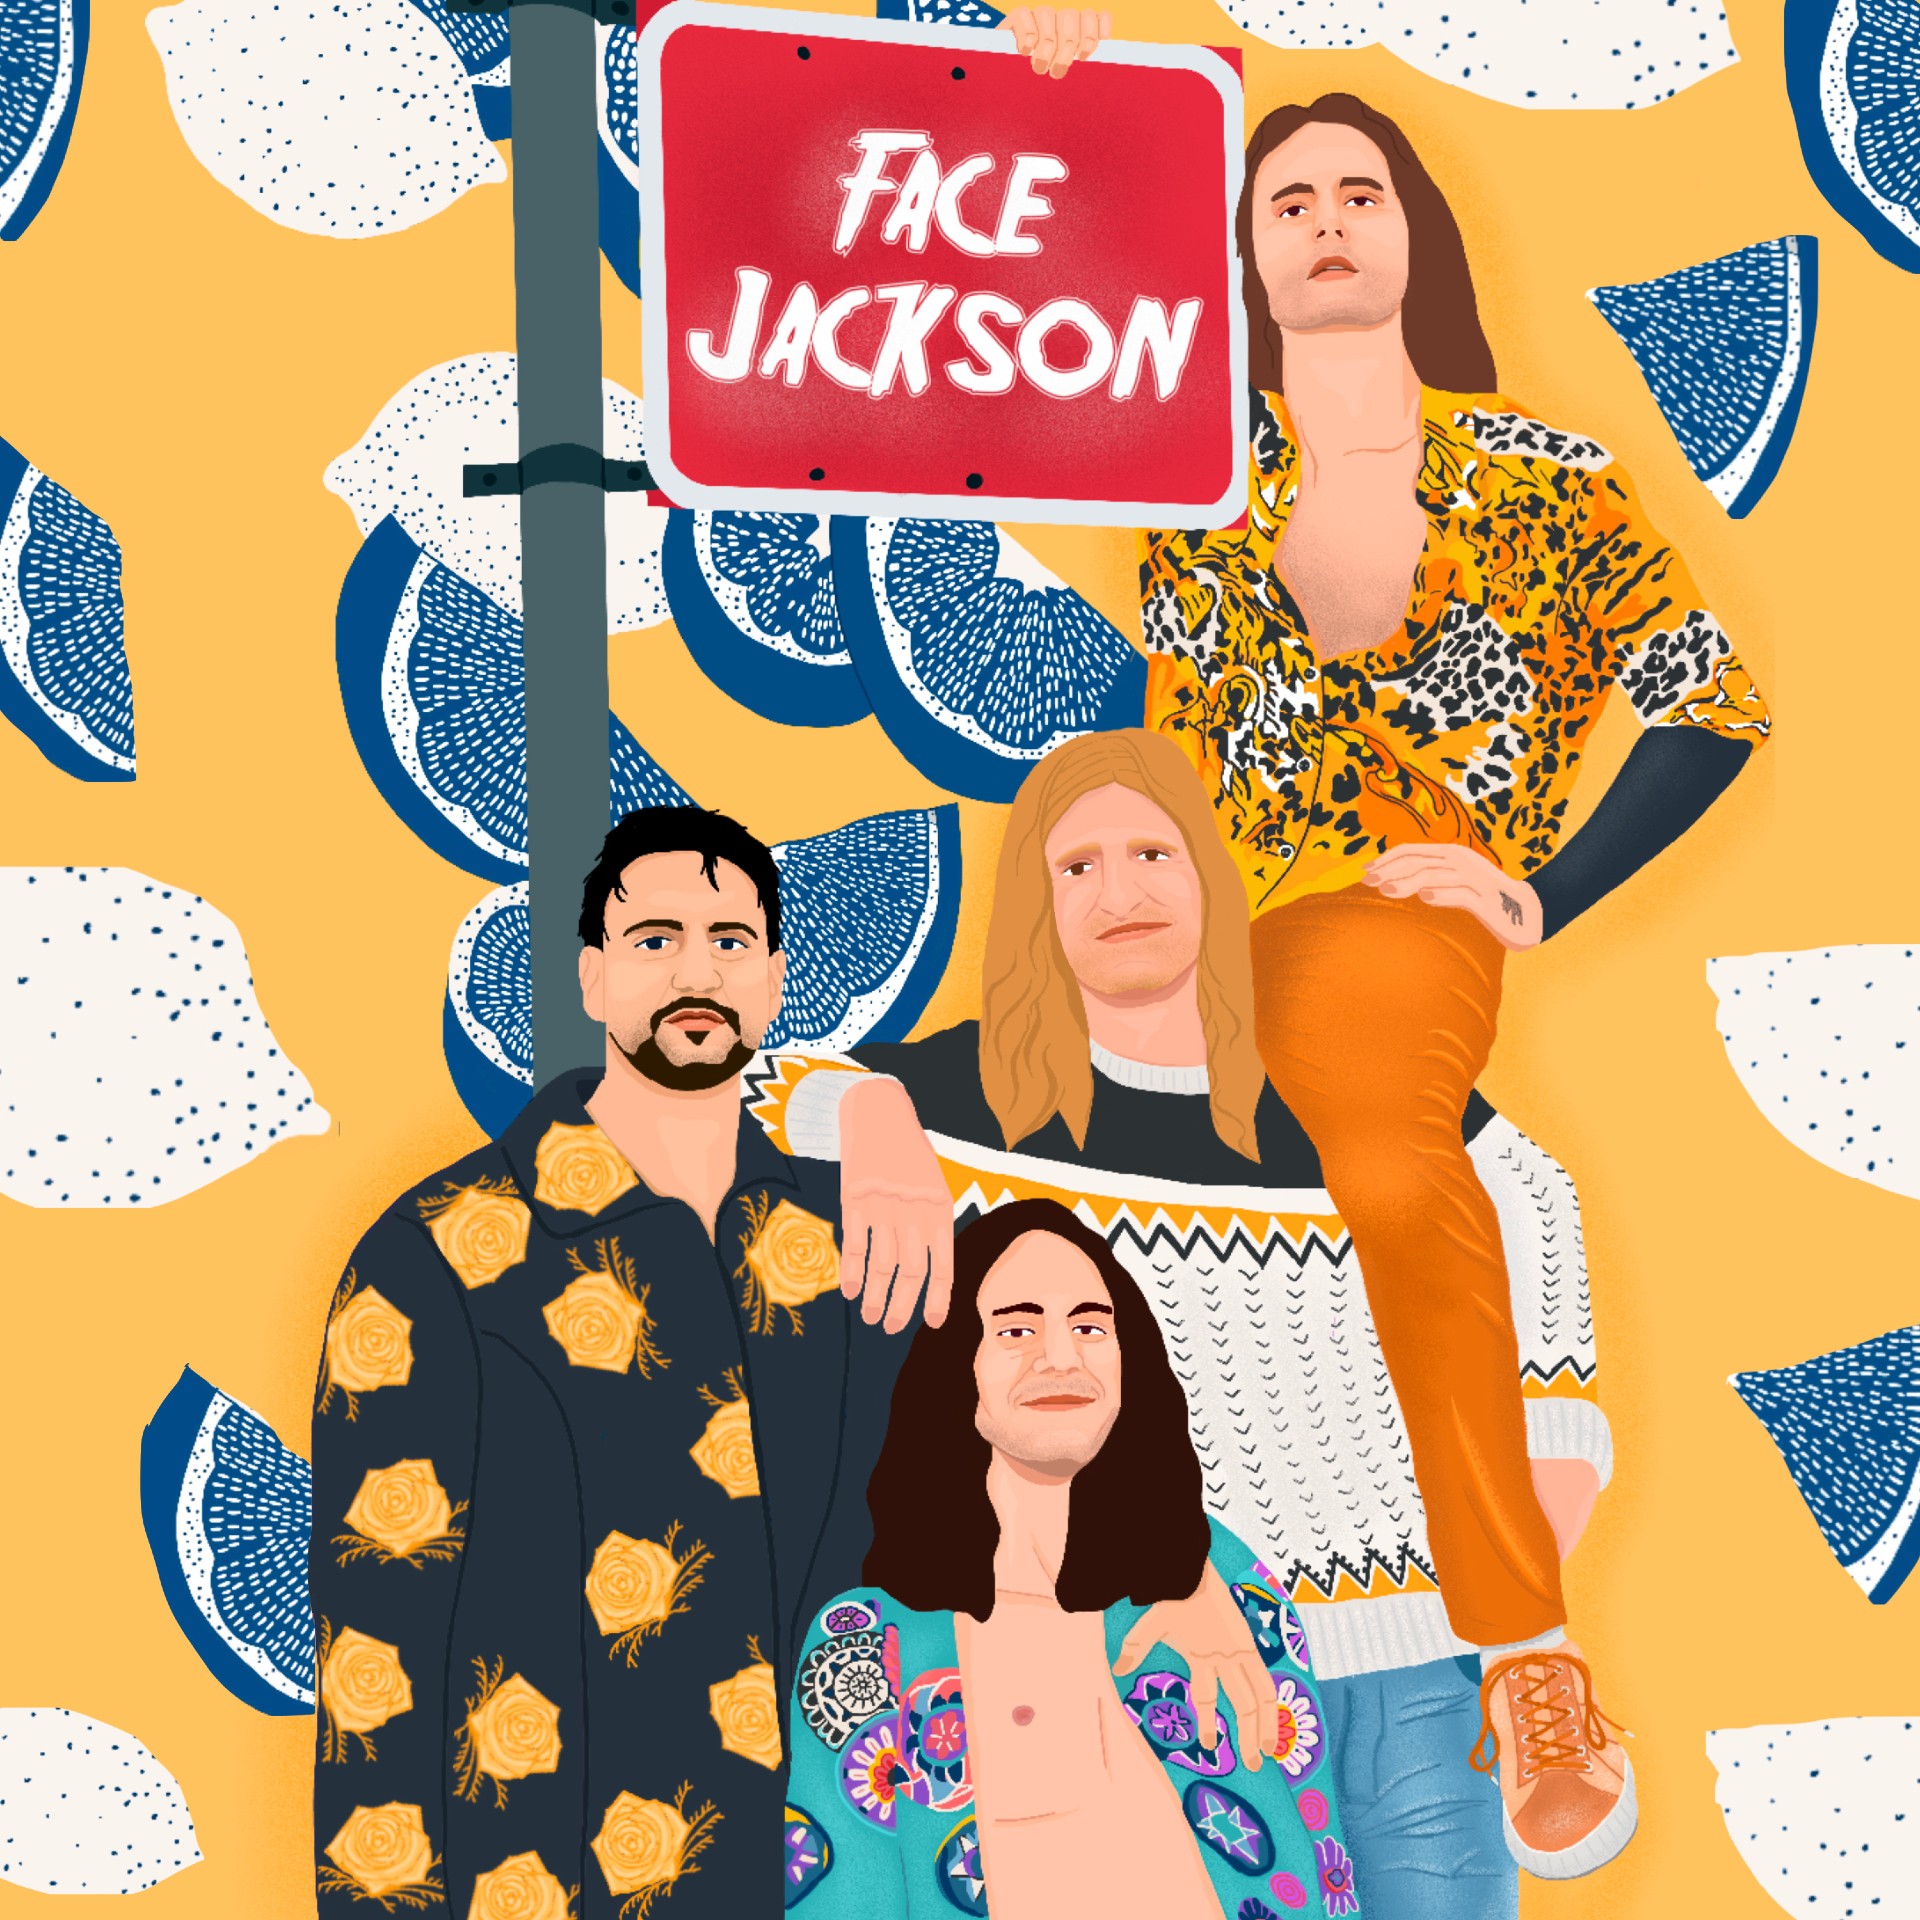 Face Jackson ‘Face Jackson’ EP album artwork